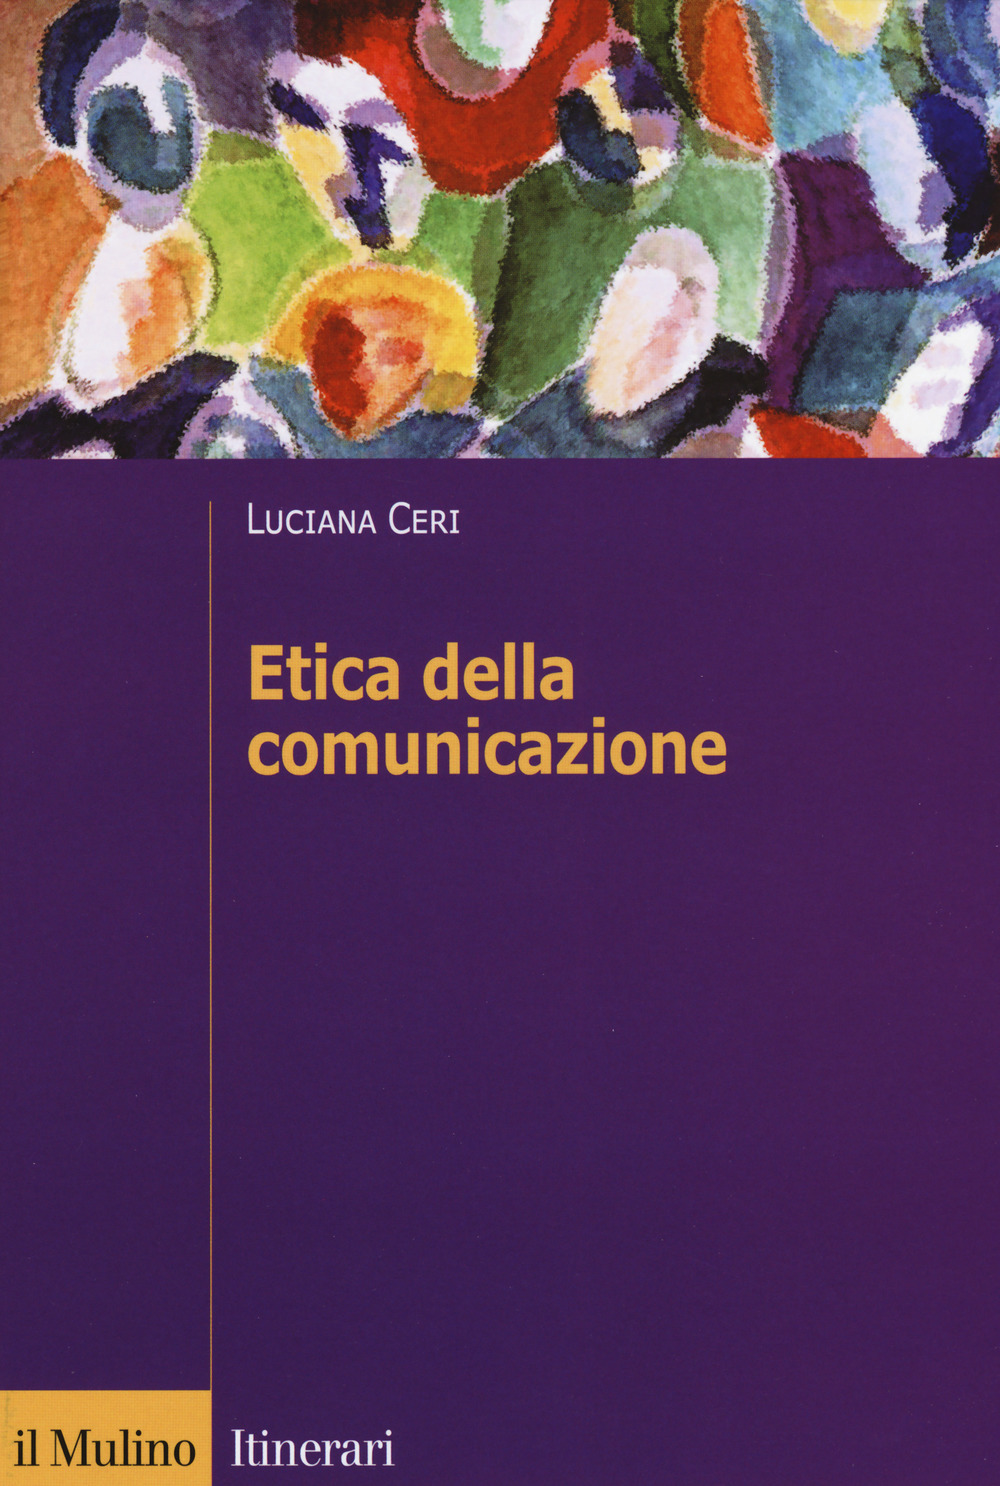 Image of Etica della comunicazione